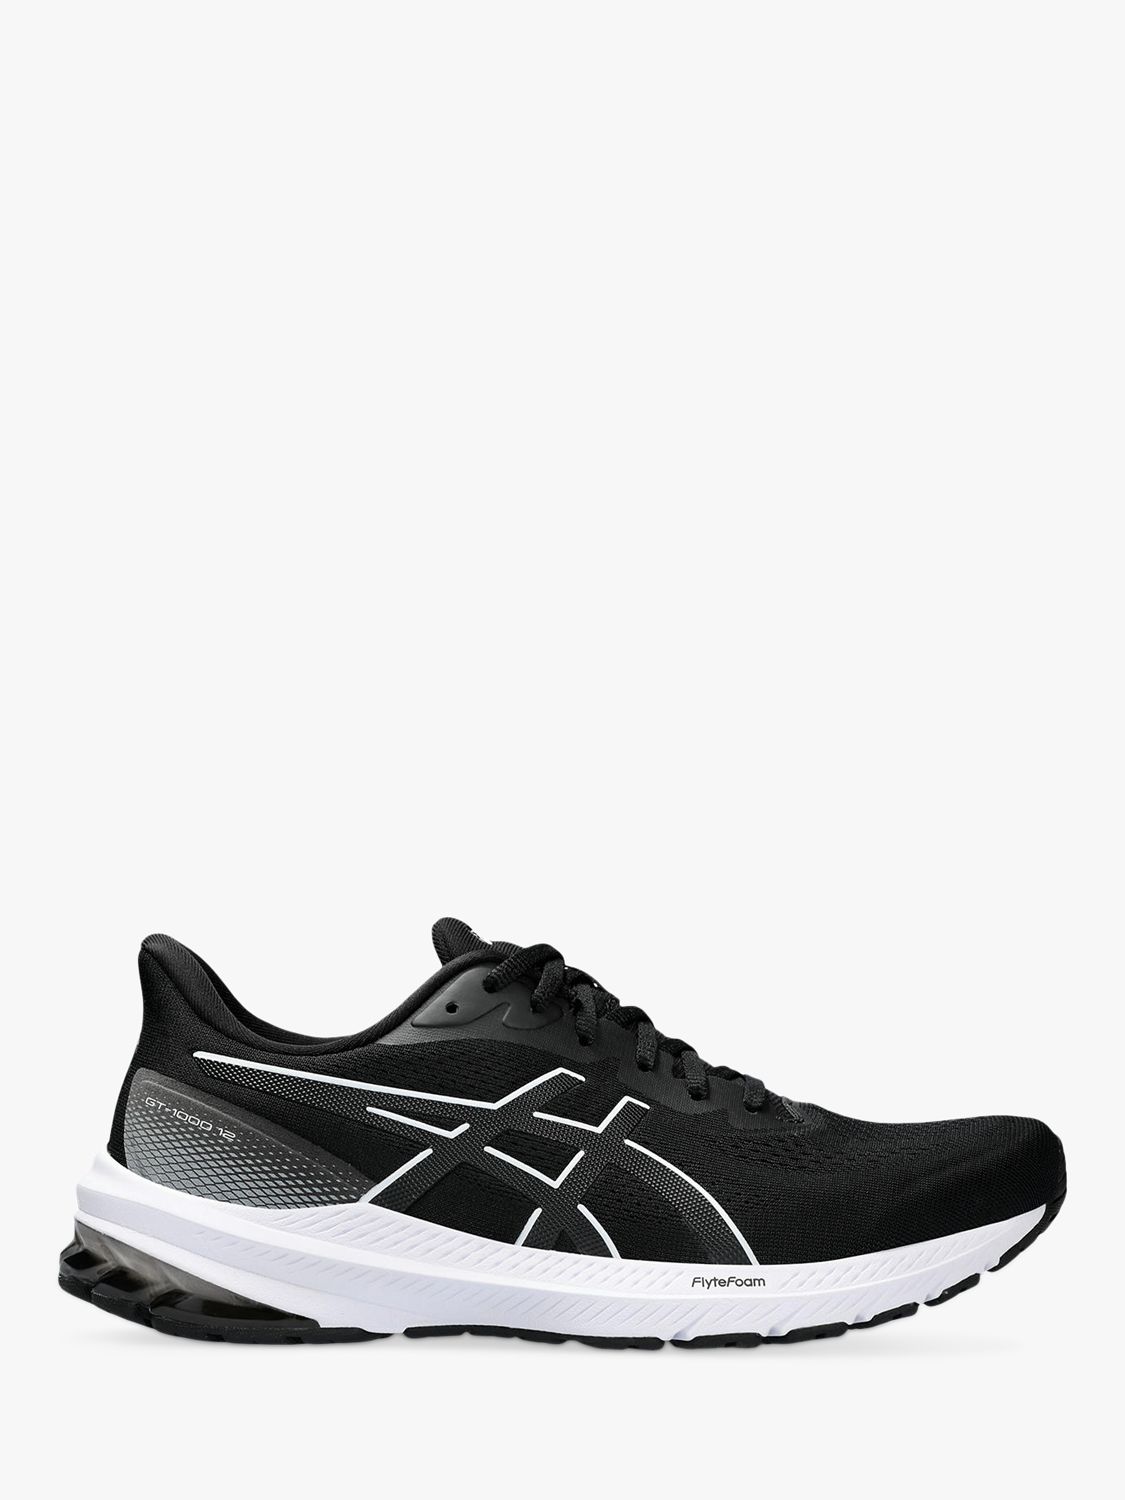 ASICS GT-1000 12 Men's Running Shoes, Black/White, 9